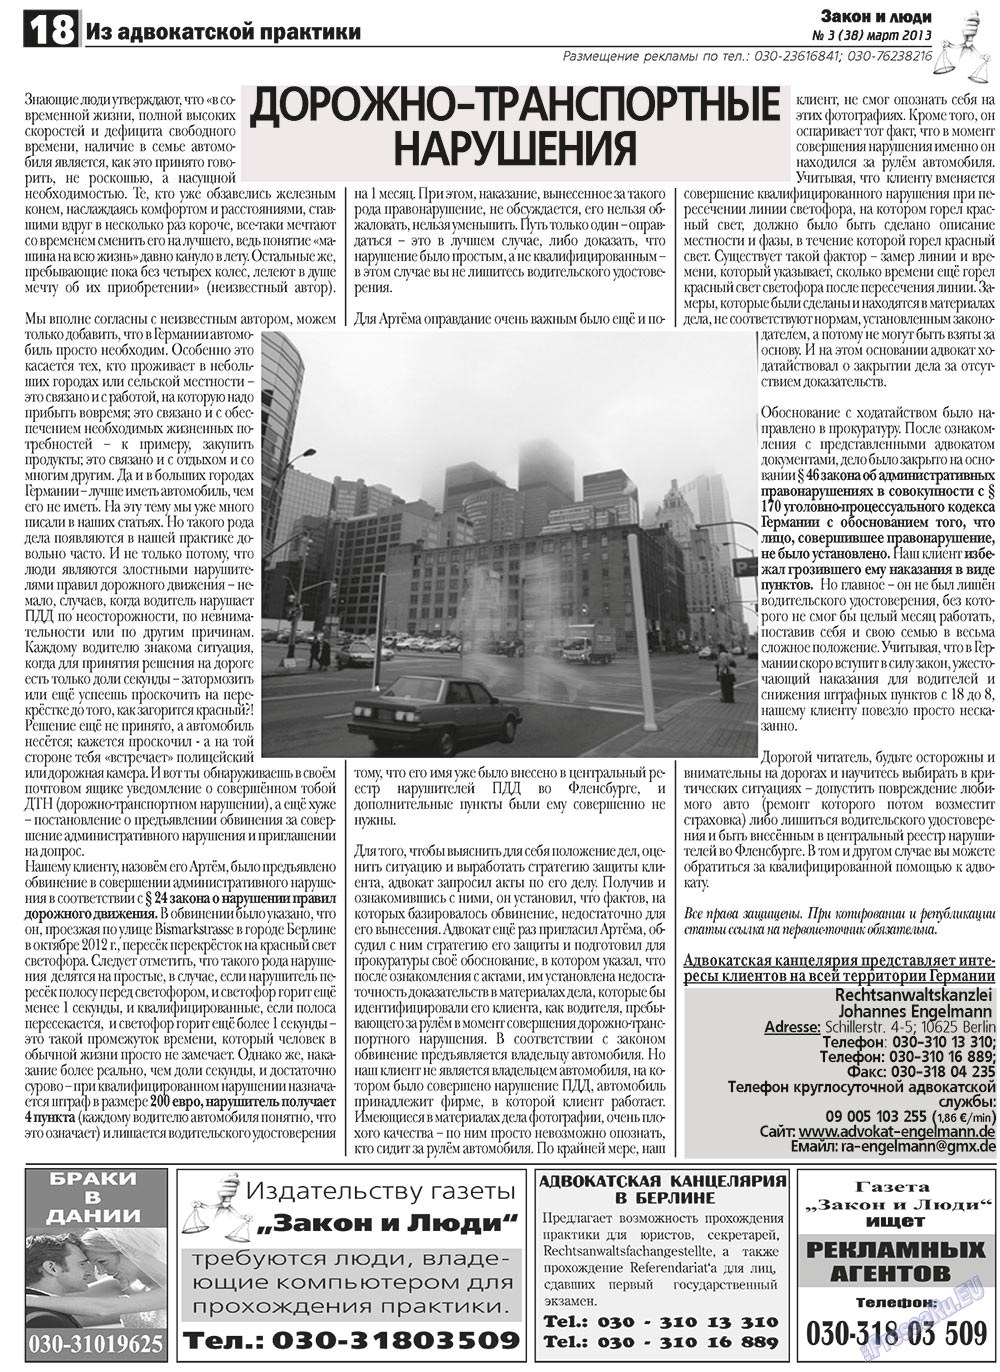 Закон и люди, газета. 2013 №3 стр.18